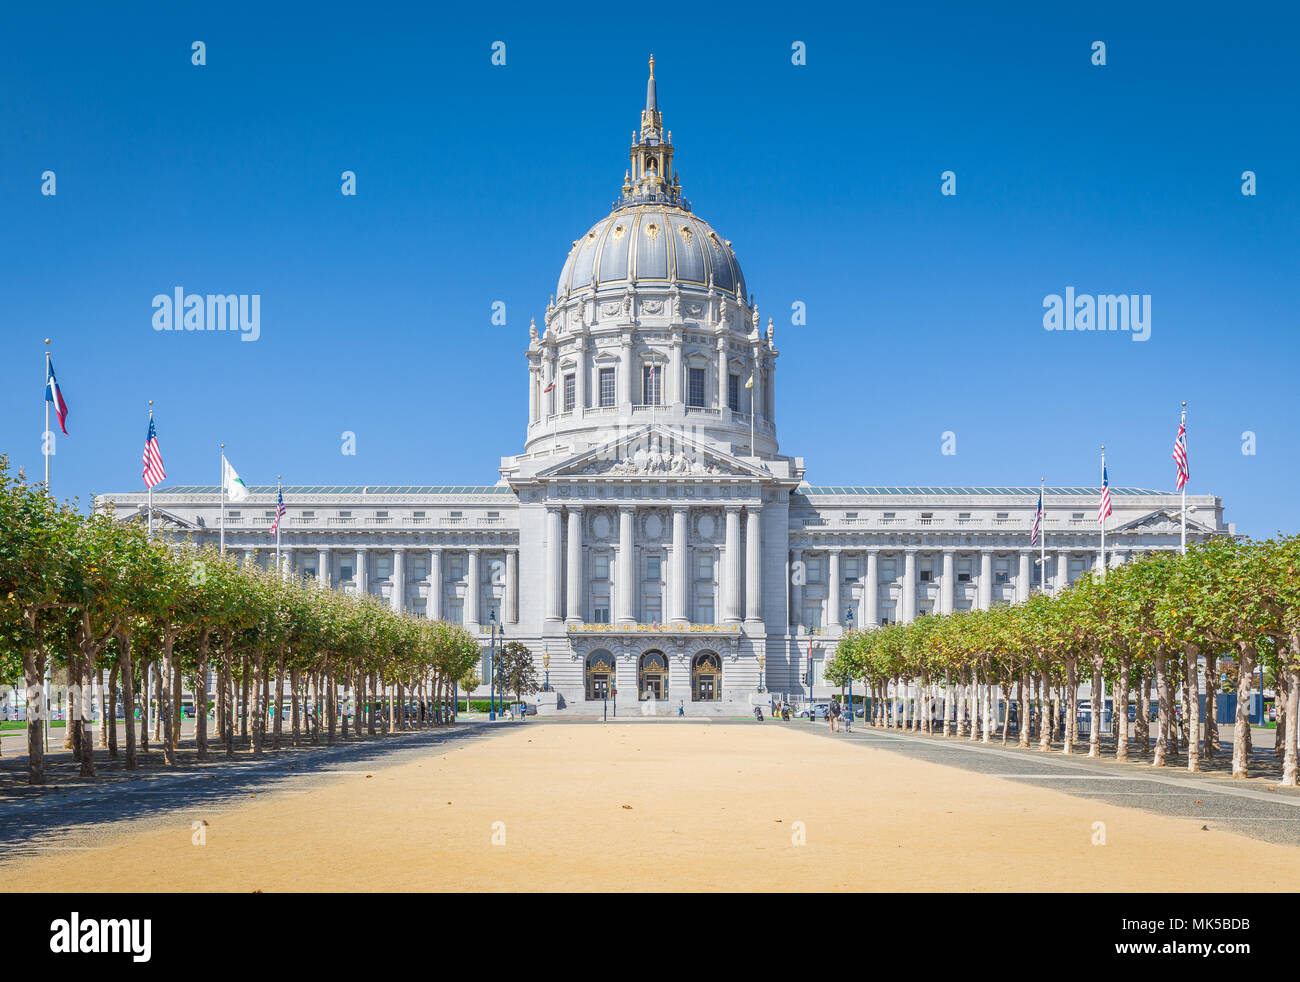 L'affichage classique de l'Hôtel de ville historique de San Francisco, le siège du gouvernement de la ville et comté de San Francisco, en Californie, lors d'une journée ensoleillée, USA Banque D'Images